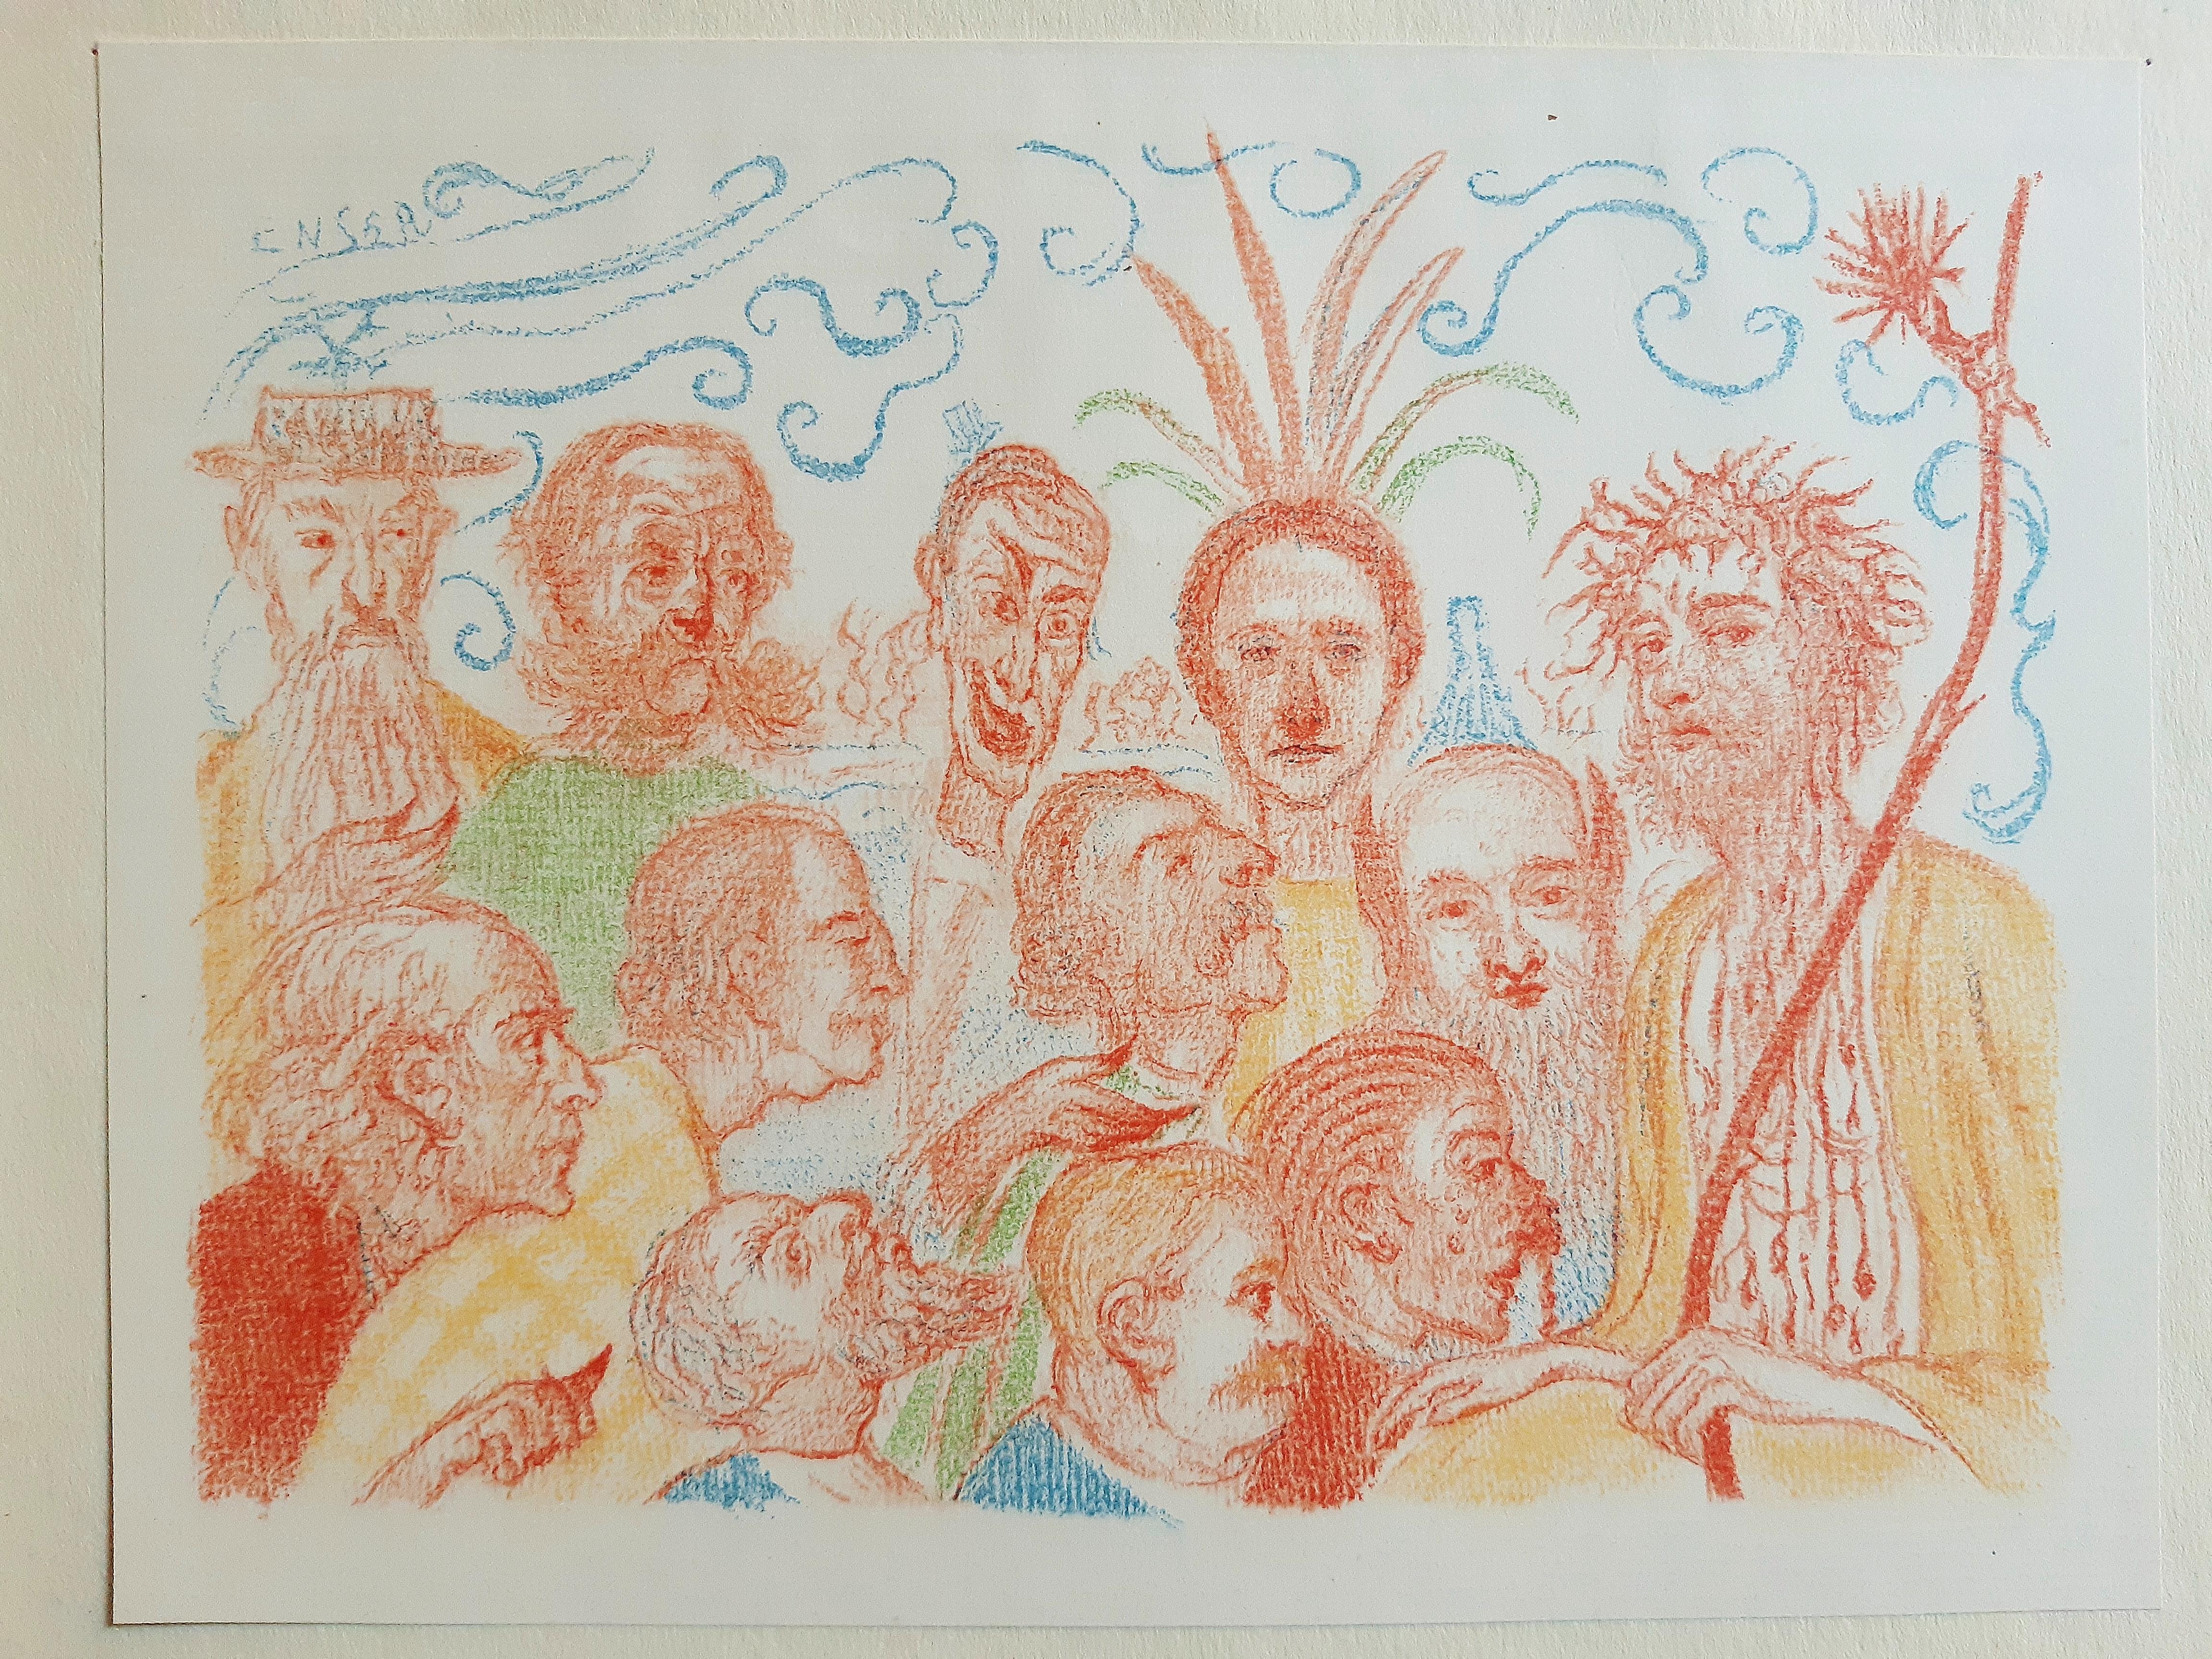 Scènes de la vie du Christ - Vintage Rare Book Illustrated by James Ensor - 1921 For Sale 4